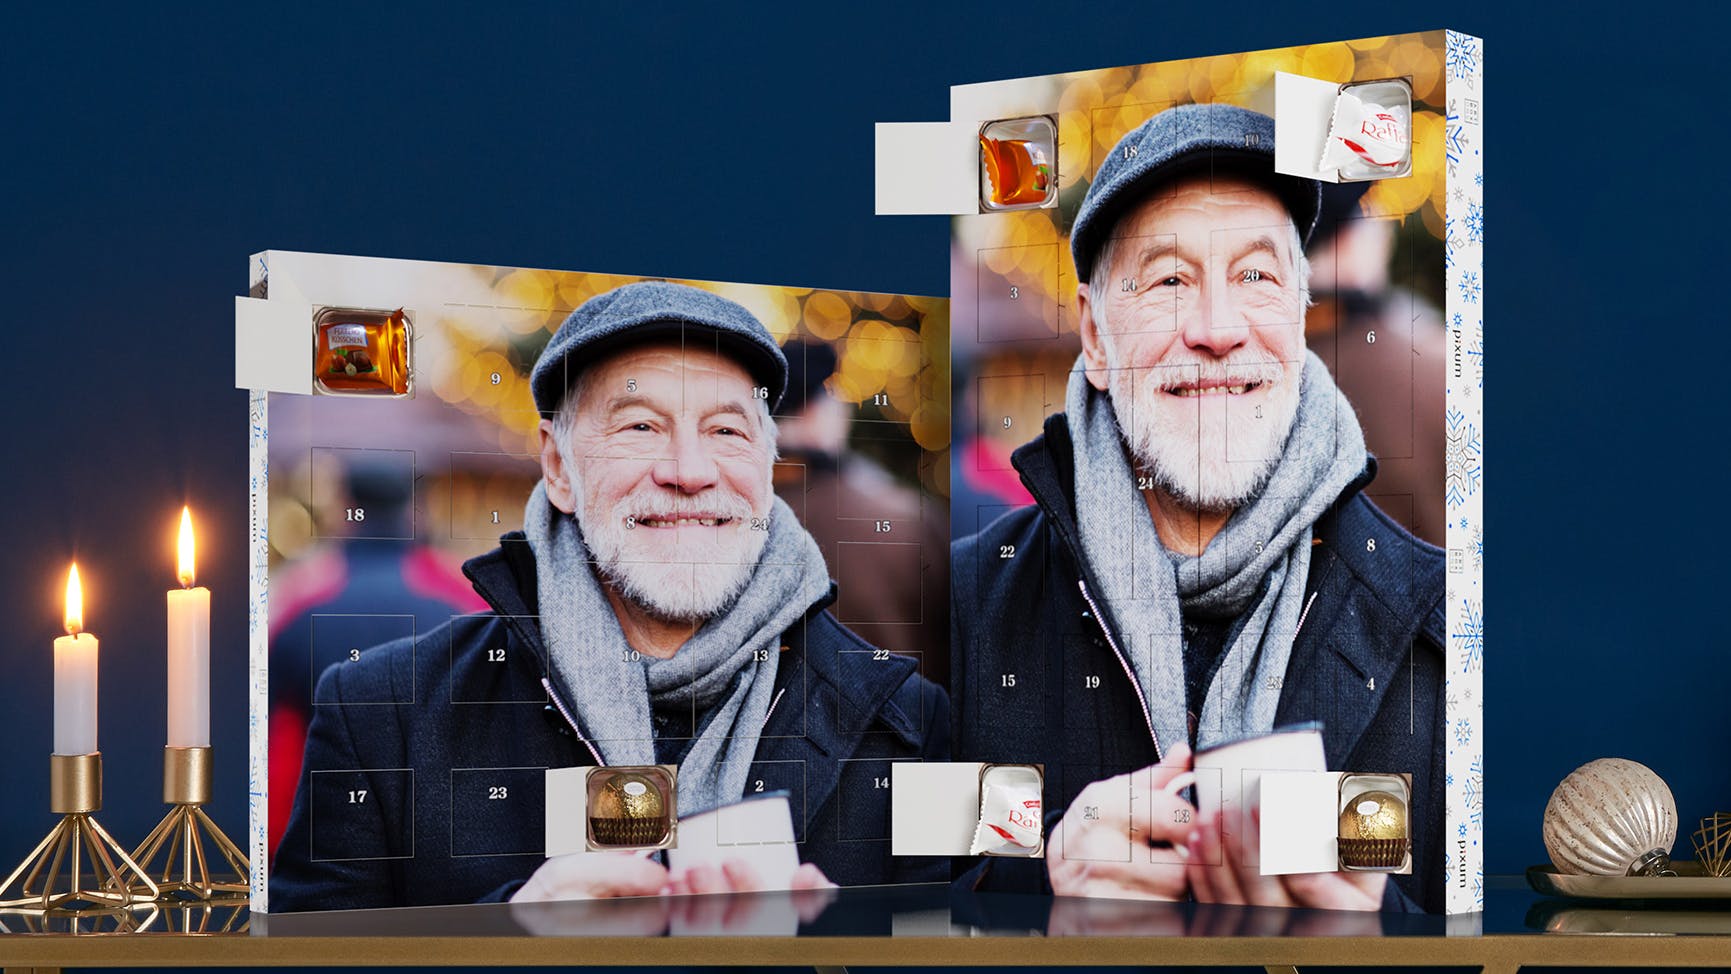 Chokoladejulekalender med Ferrero praliner, og et billede af en  ældre mand der smiler